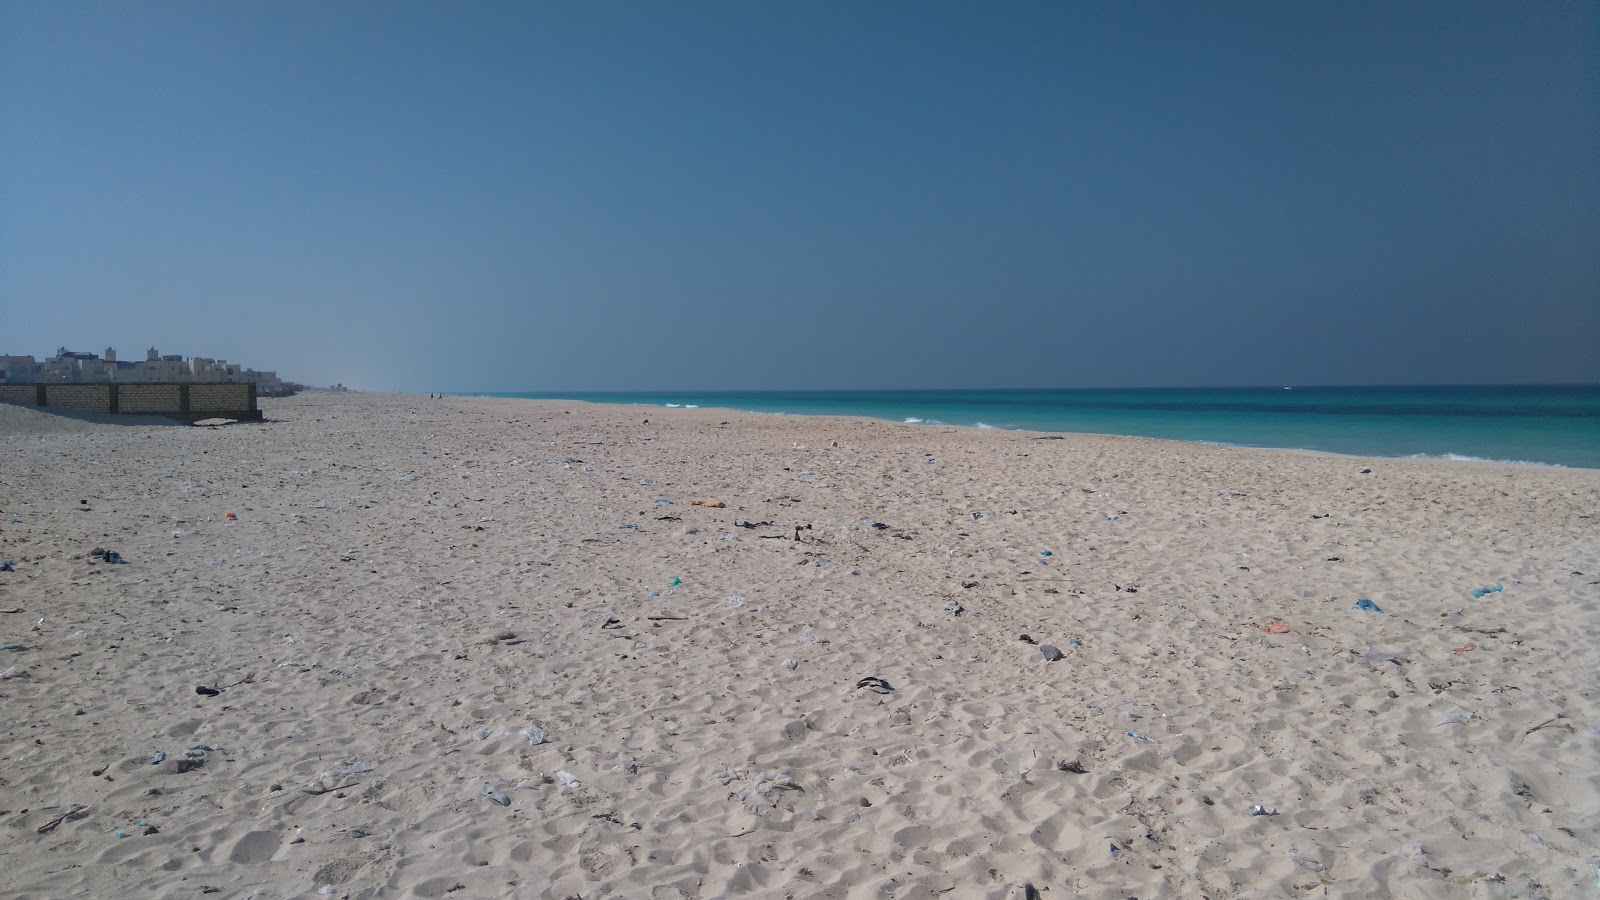 Fotografie cu Sidi Krier Beach - locul popular printre cunoscătorii de relaxare